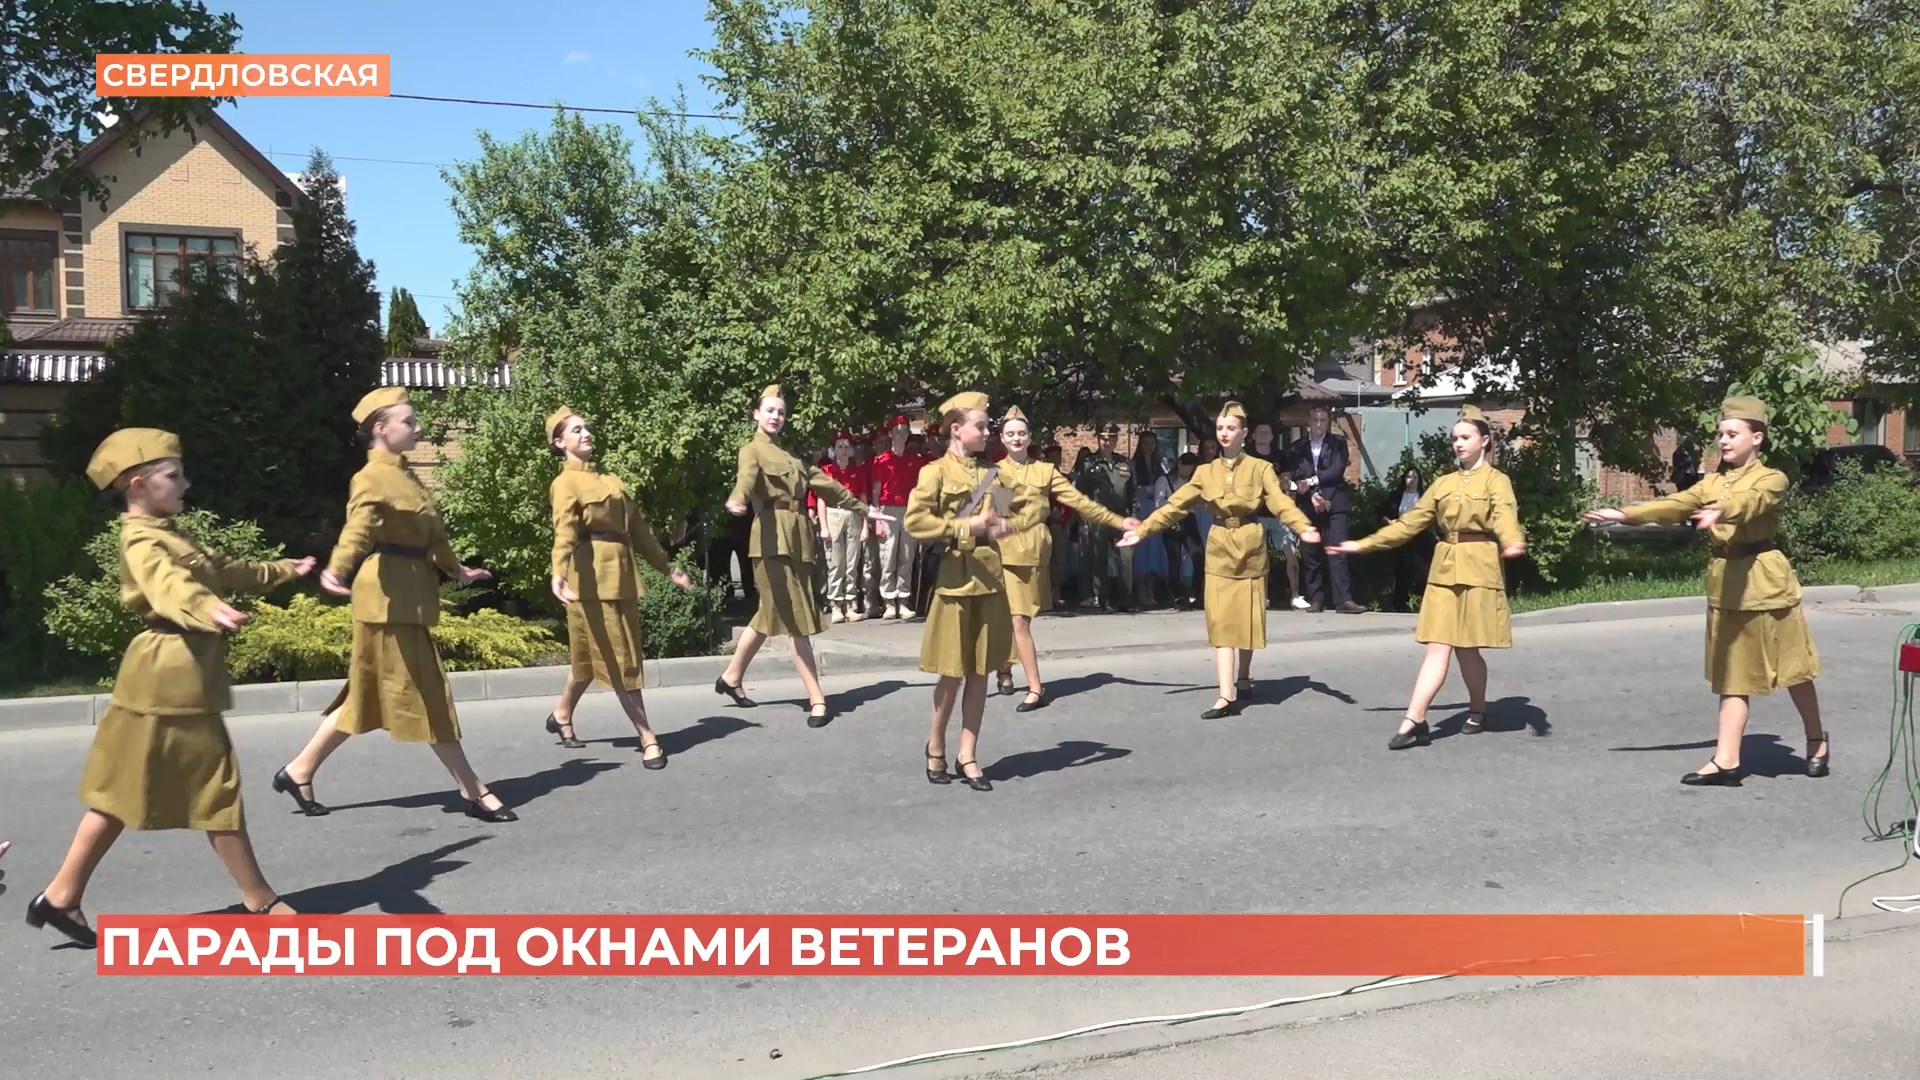 Мини-парады у домов ветеранов проходят в эти дни по всему Ростову